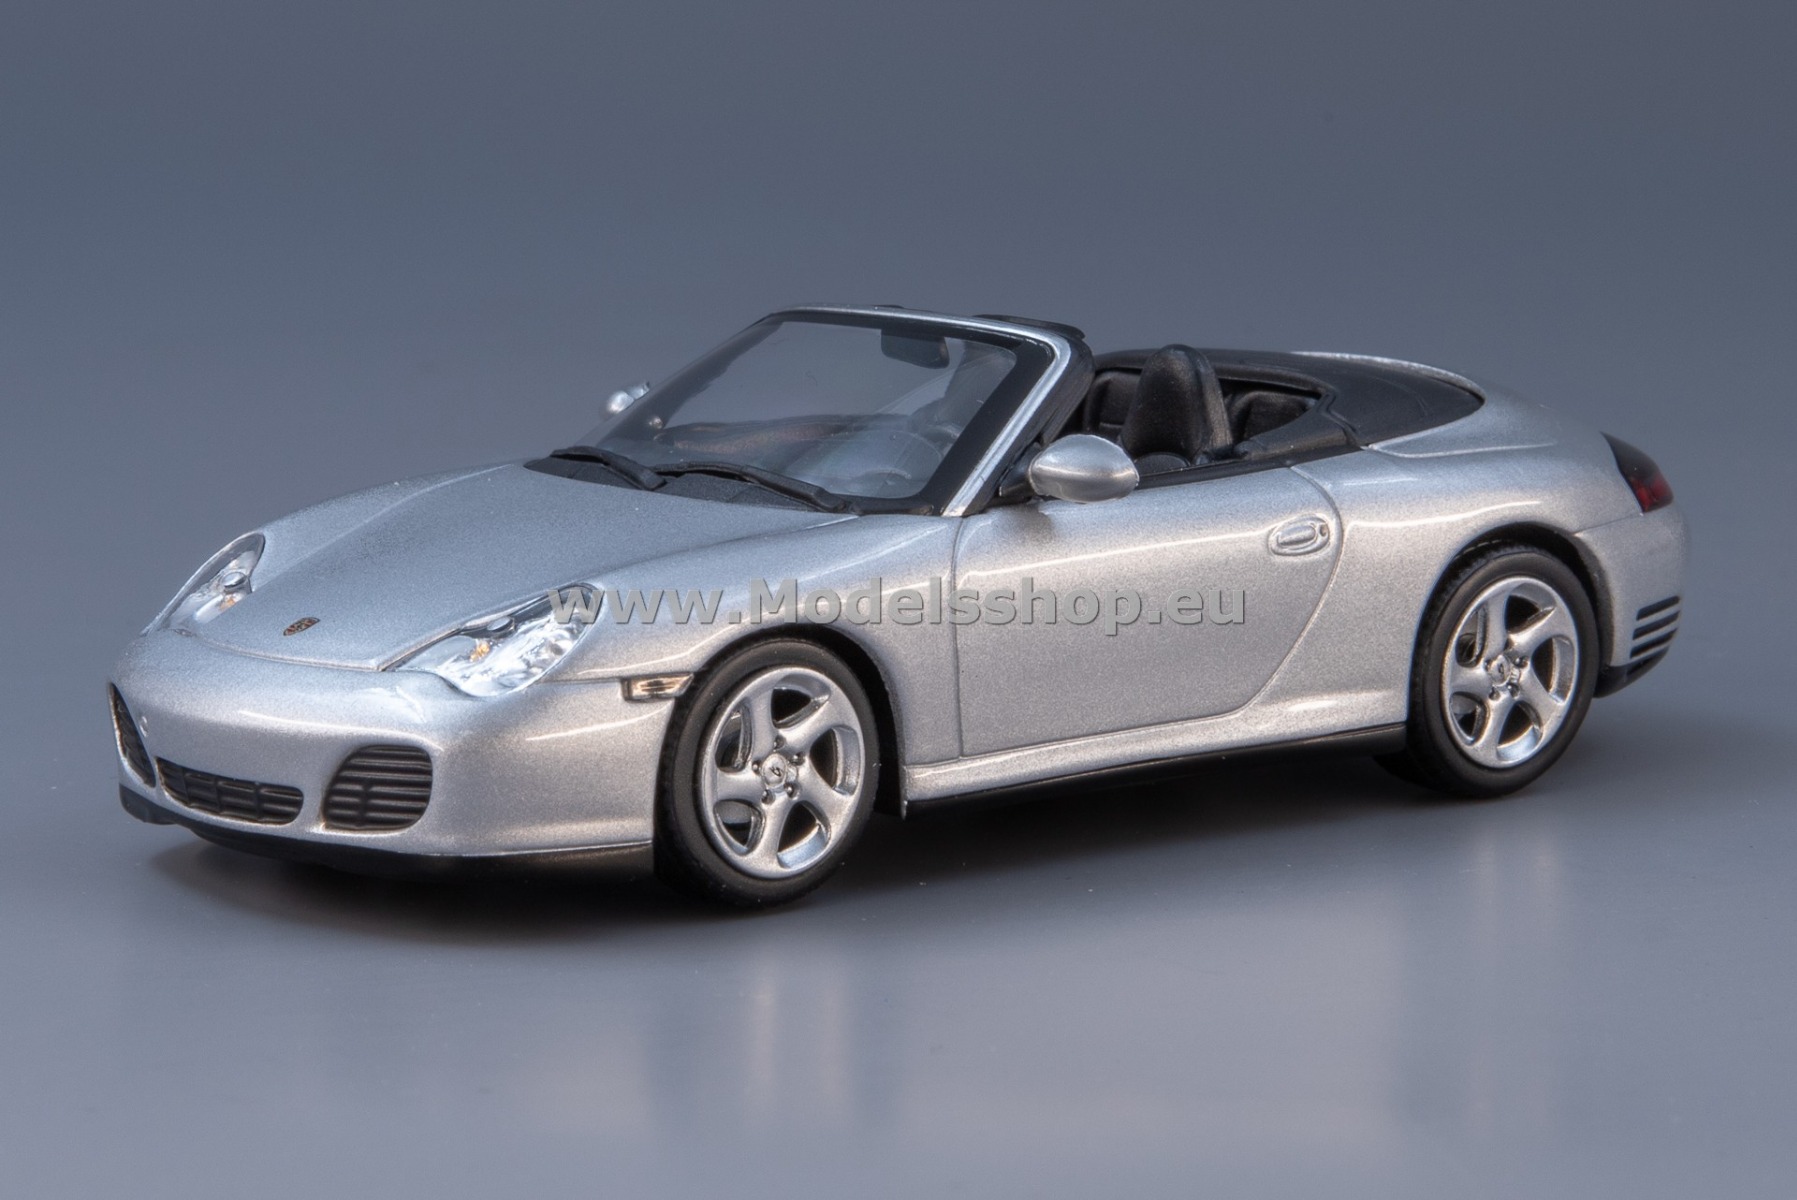 Maxichamps 940062831 Porsche 911 4S Cabriolet, 2003 /silver/